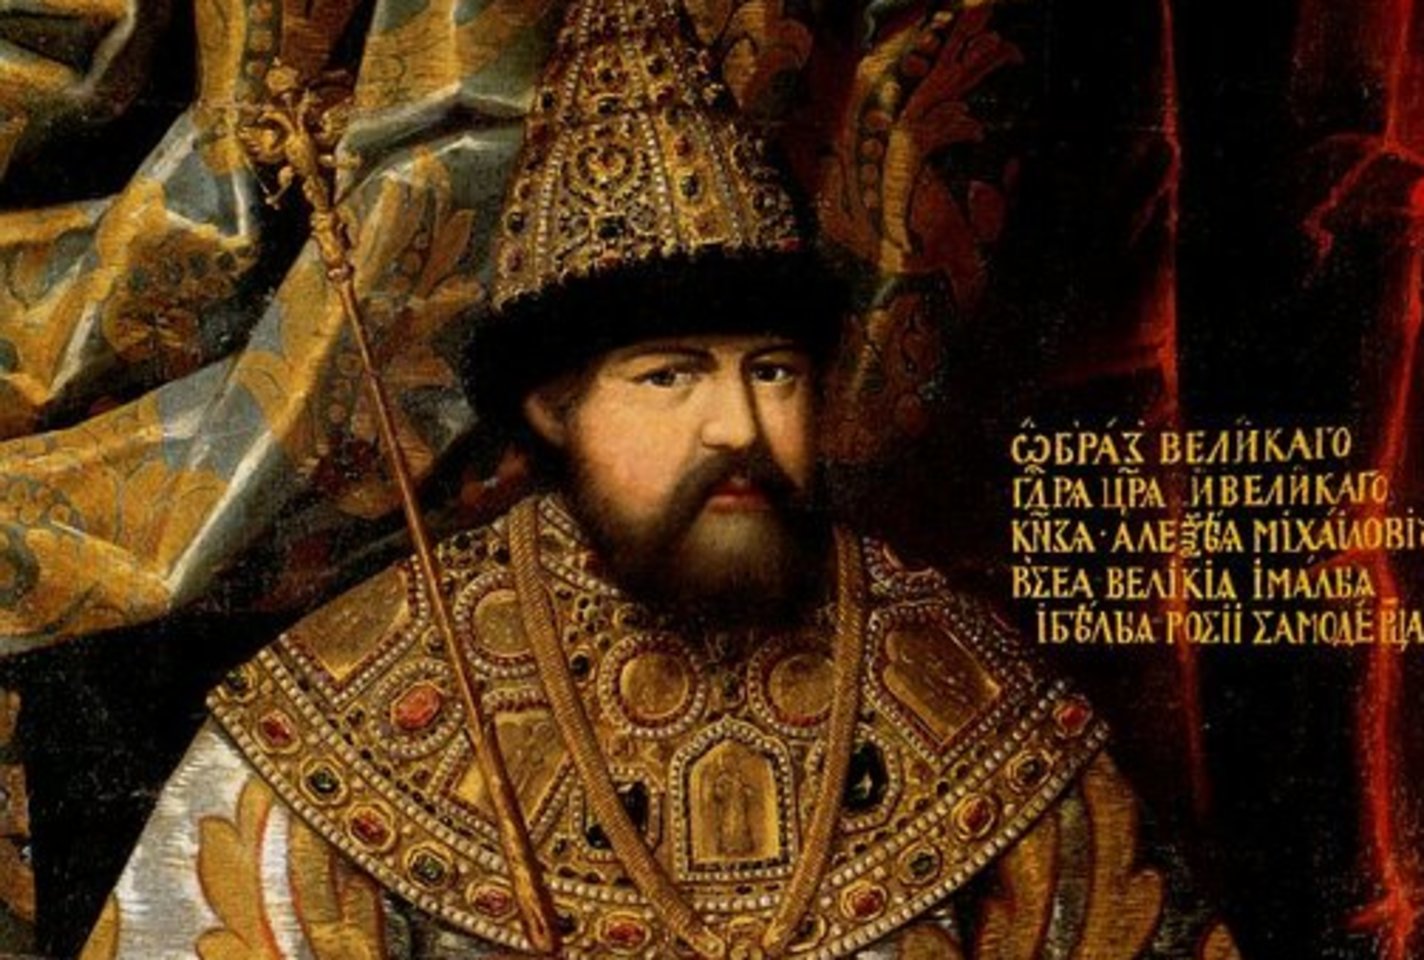 1655 m. į rusų armijos užimtą Vilnių atvykęs Rusijos caras Aleksejus Michailovičius pasiskelbė Lietuvos Didžiosios Kunigaikštystės su sienomis iki 1569 m. didžiuoju kunigaikščiu.<br>wikipedia